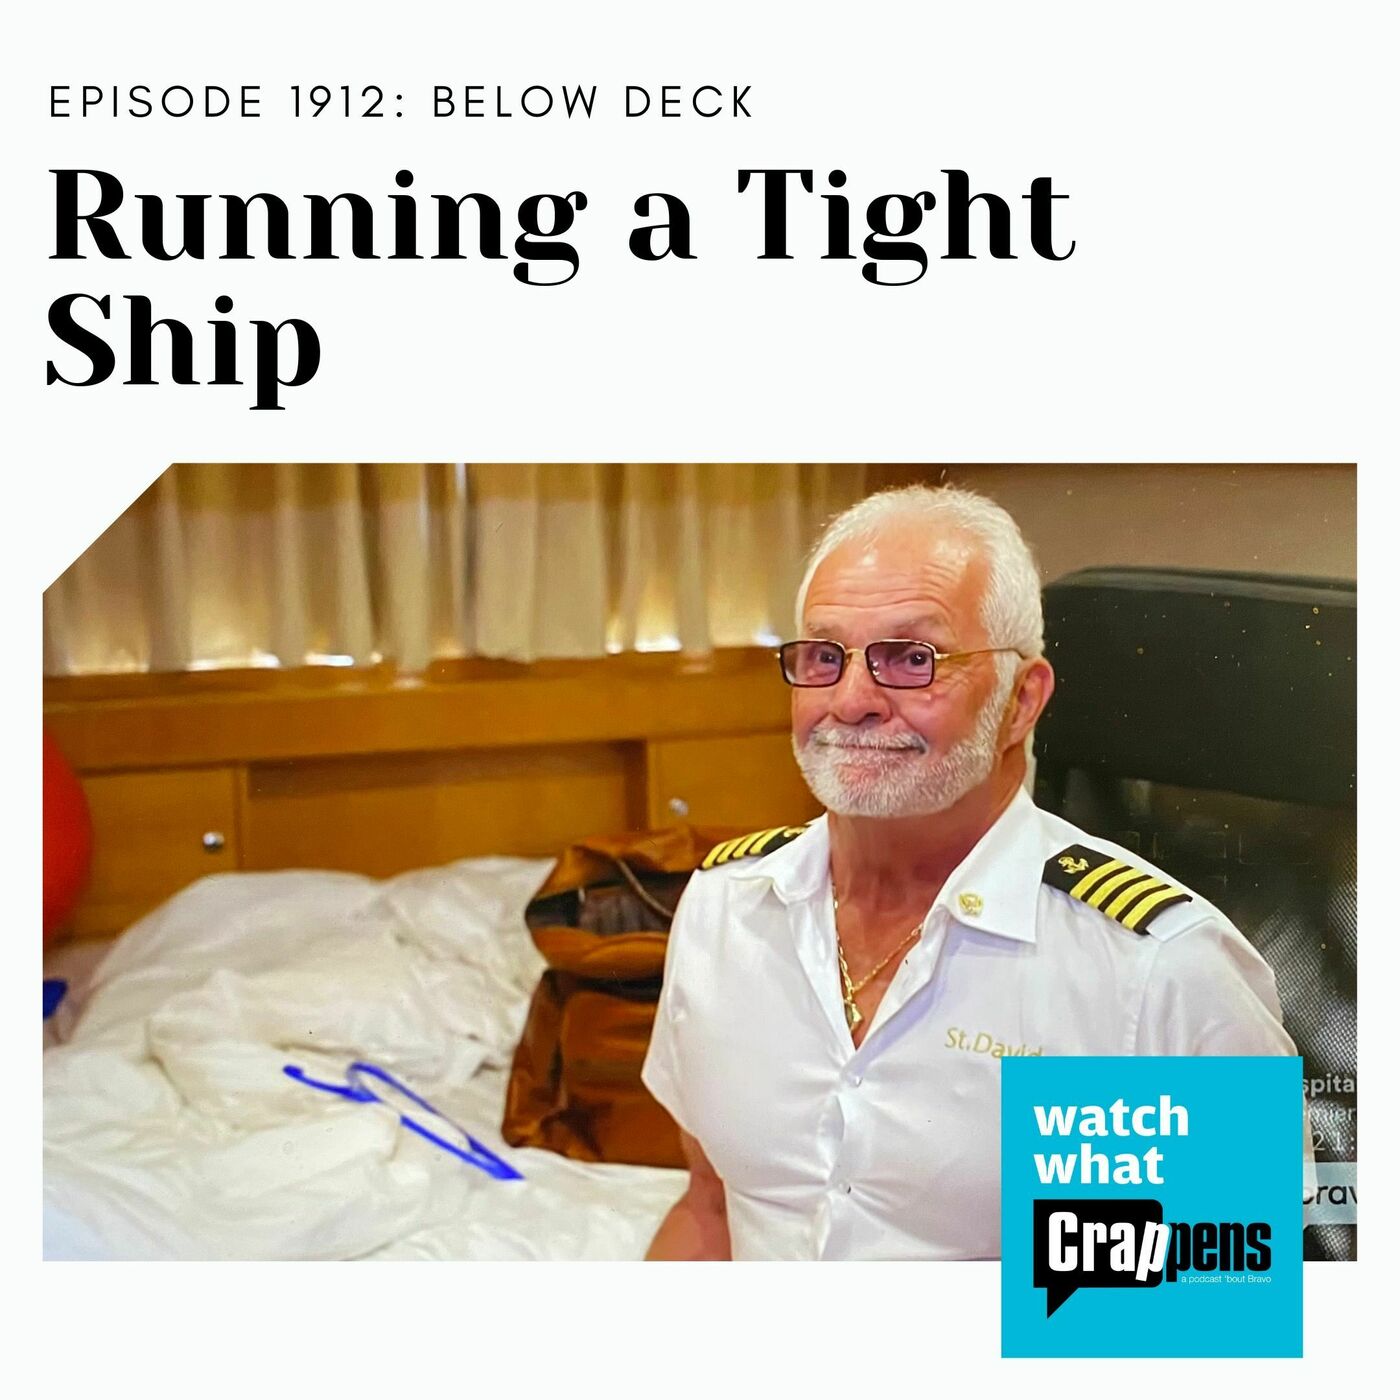 BelowDeck: Running a Tight Ship